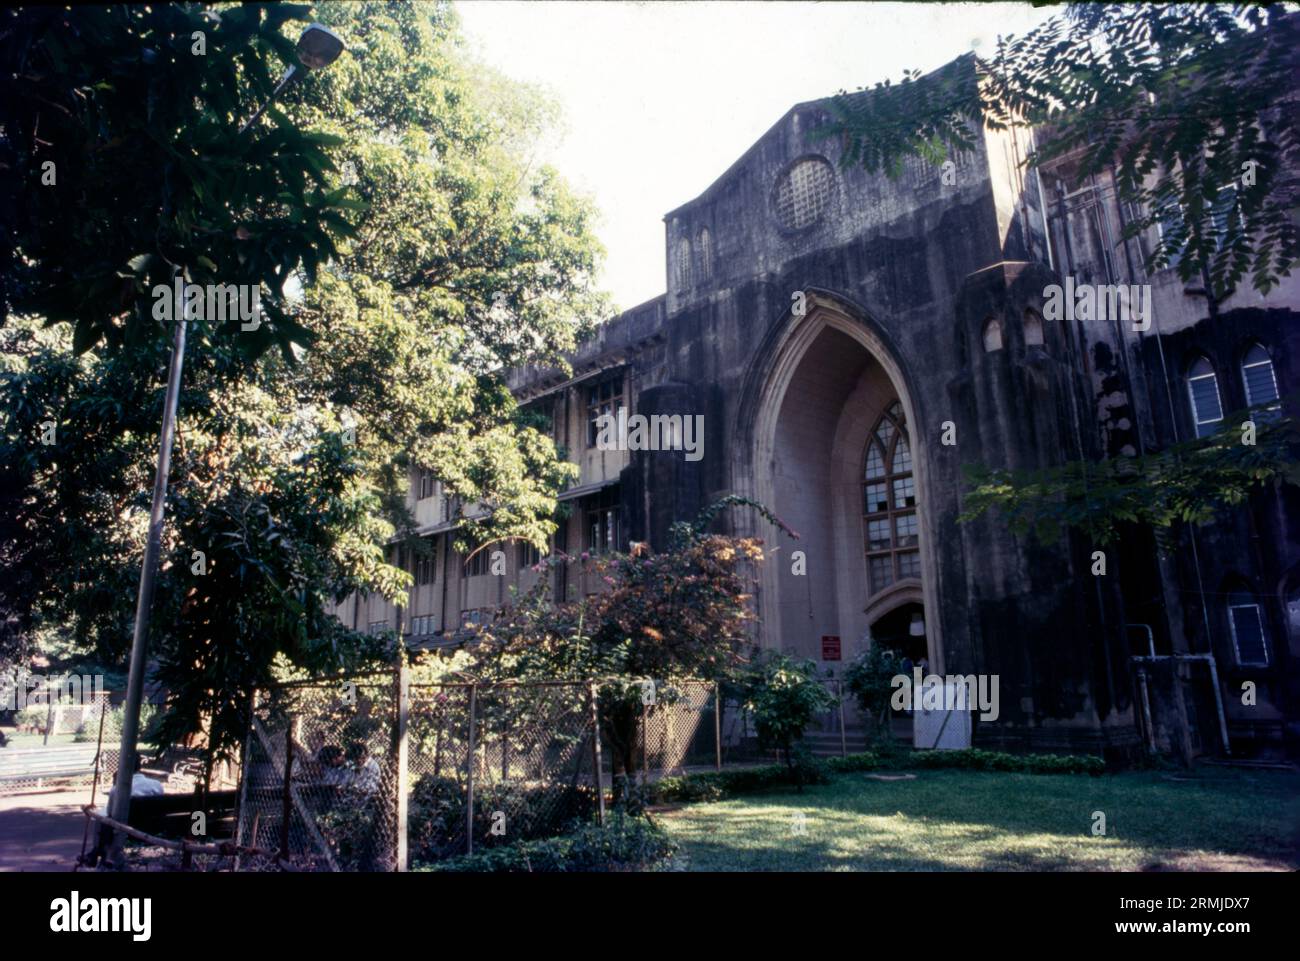 L'Université de Mumbai est une université publique de Mumbai. C'est l'un des plus grands systèmes universitaires au monde avec plus de 549 000 étudiants sur ses campus et collèges affiliés. En 2013, l'université comptait 711 collèges affiliés. Ratan Tata est nommé à la tête du conseil consultatif. Banque D'Images